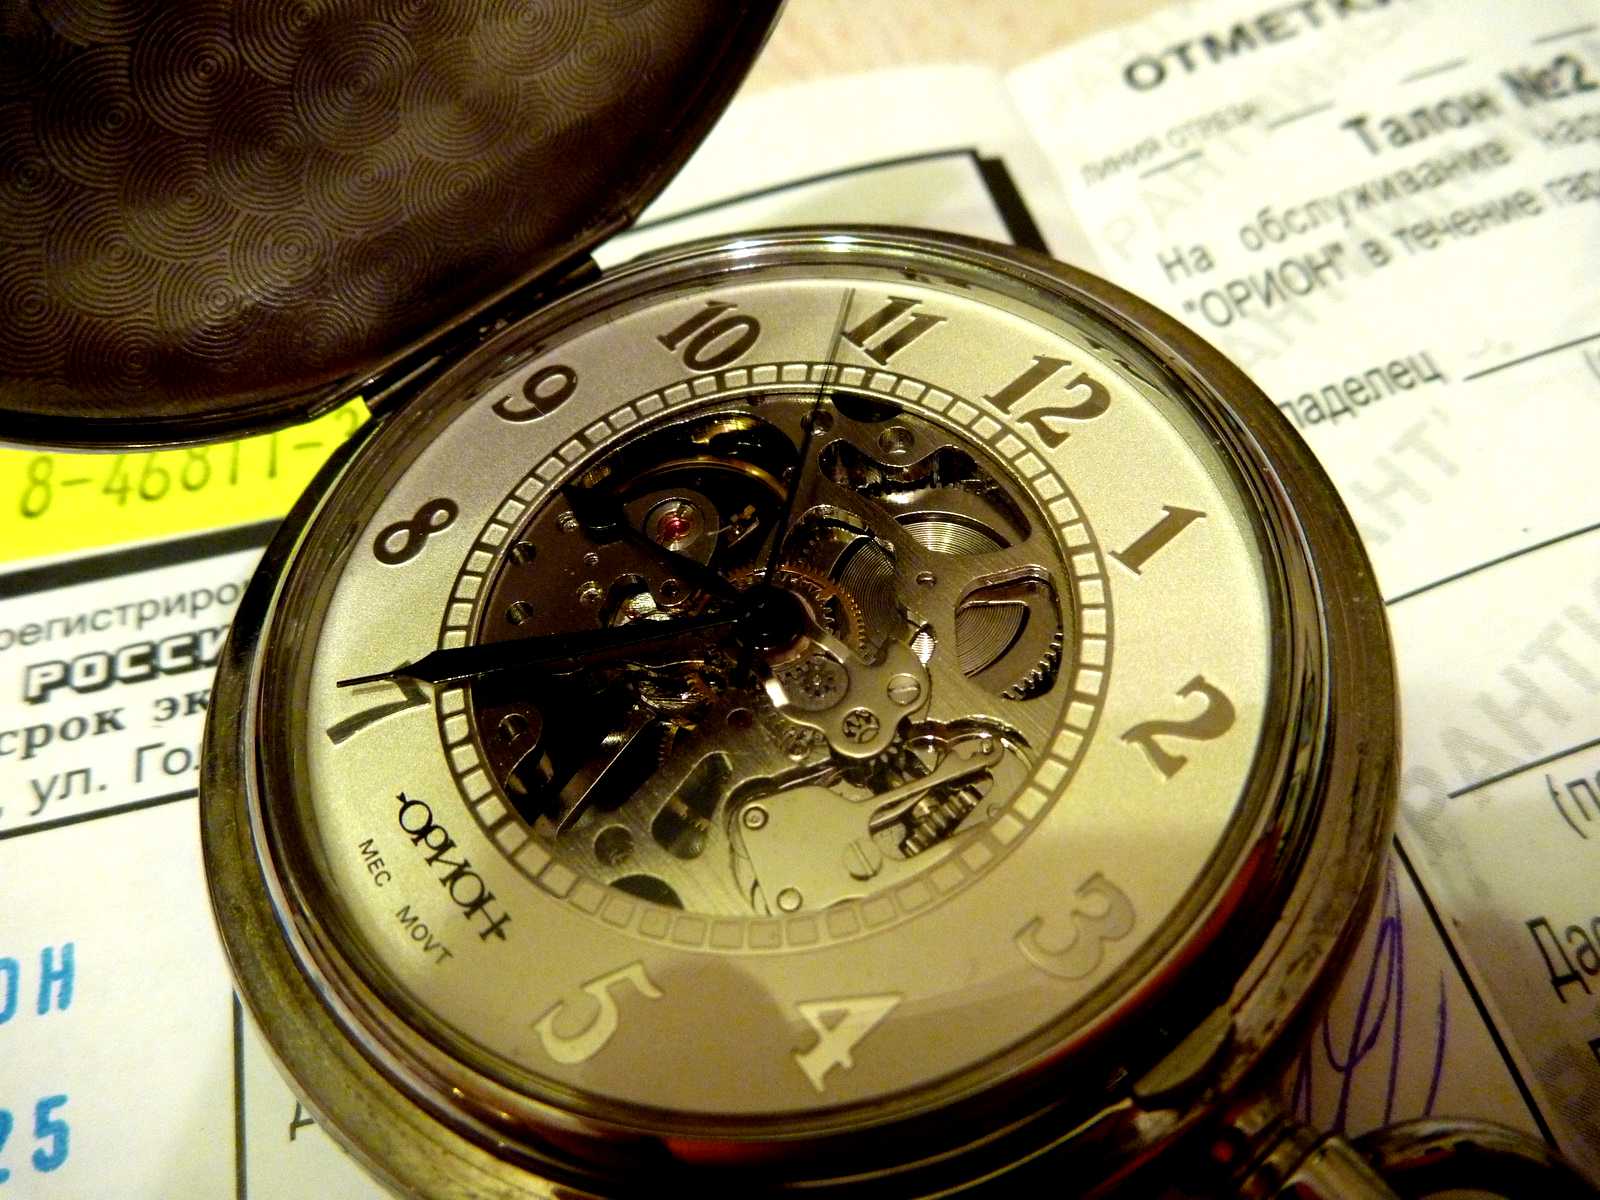 80 тысяч часов. Часы Орион скелетон. Карманные часы Орион скелетон. Орион часы мужские карманные. Часы Орион скелетон 2002.